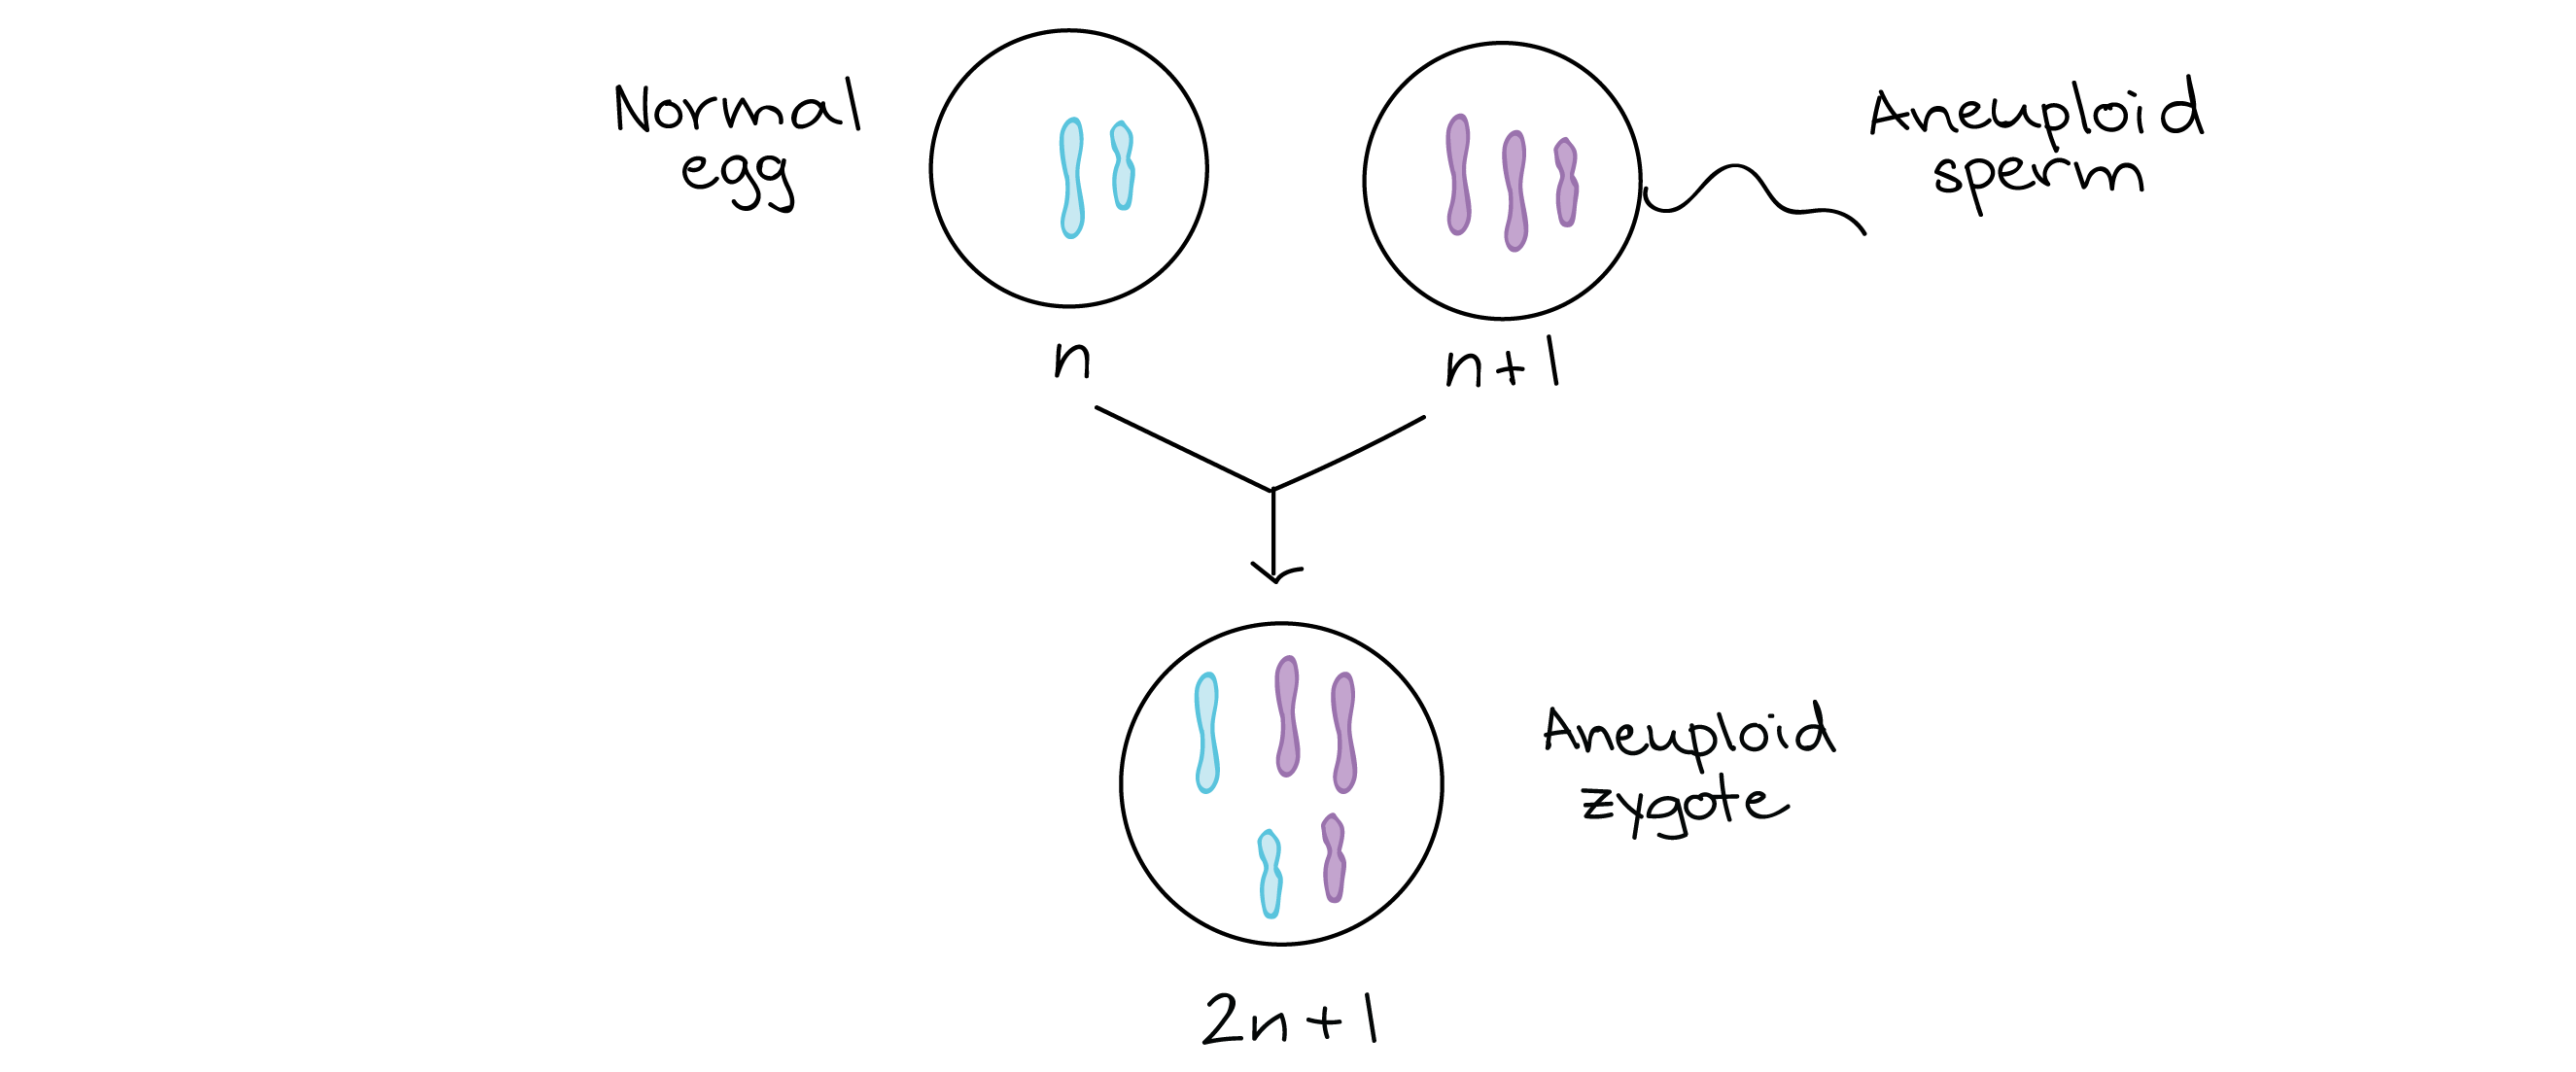 Diagrama de um evento de fertilização onde um óvulo normal (n) se combina com um espermatozoide aneuploide (n + 1). O zigoto formado pela fertilização é aneuploide (2n + 1).